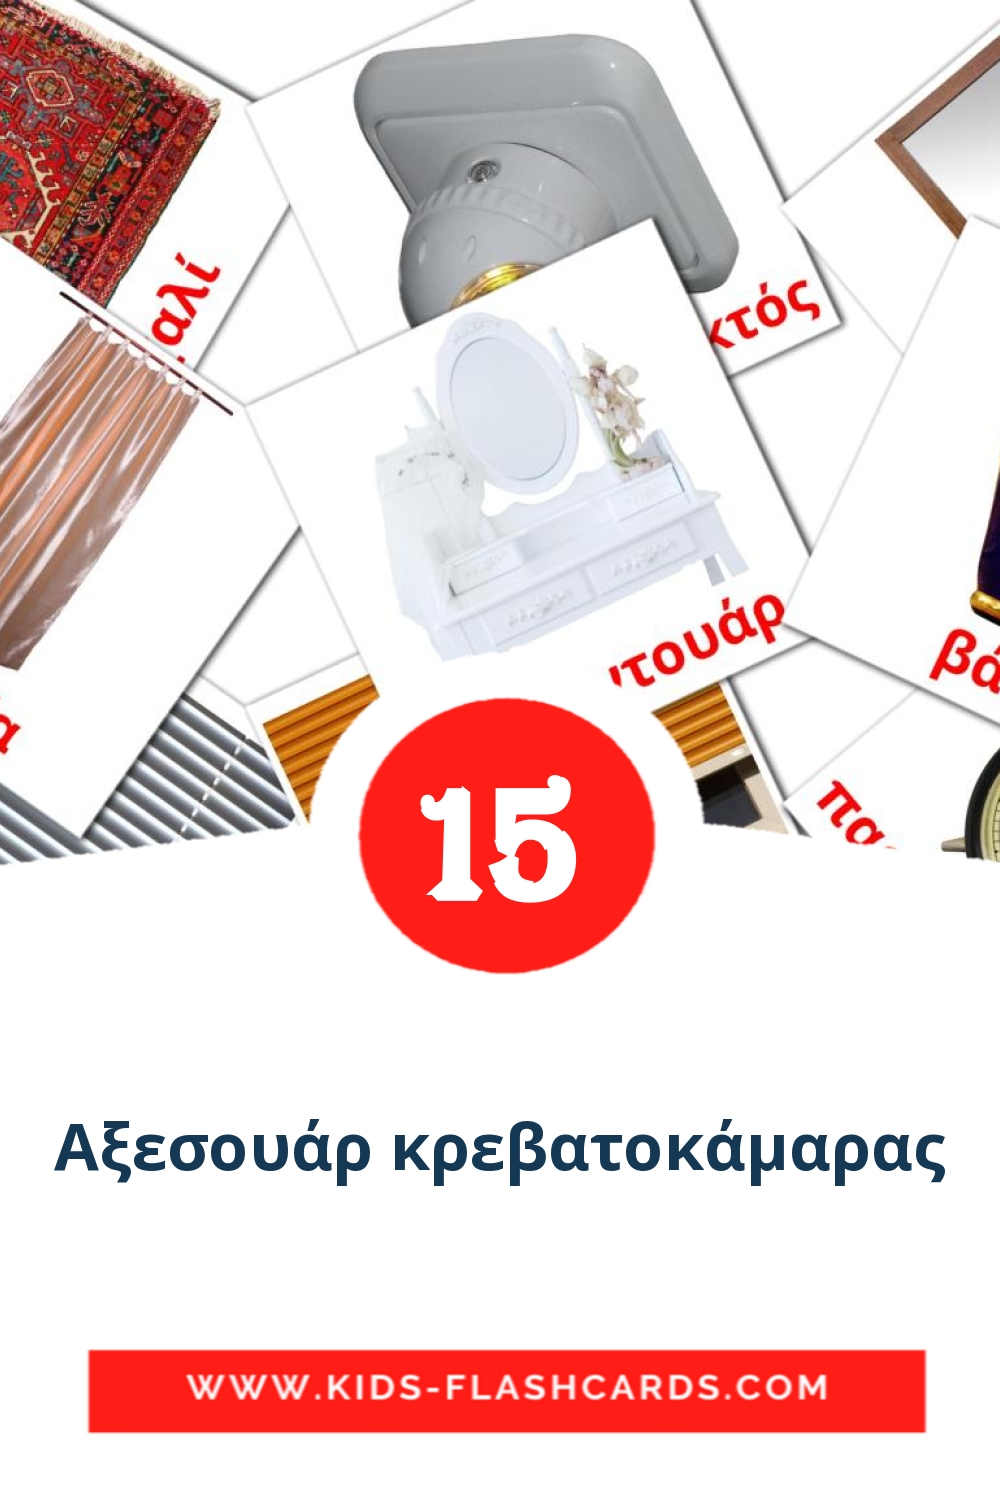 15 Αξεσουάρ κρεβατοκάμαρας Picture Cards for Kindergarden in greek